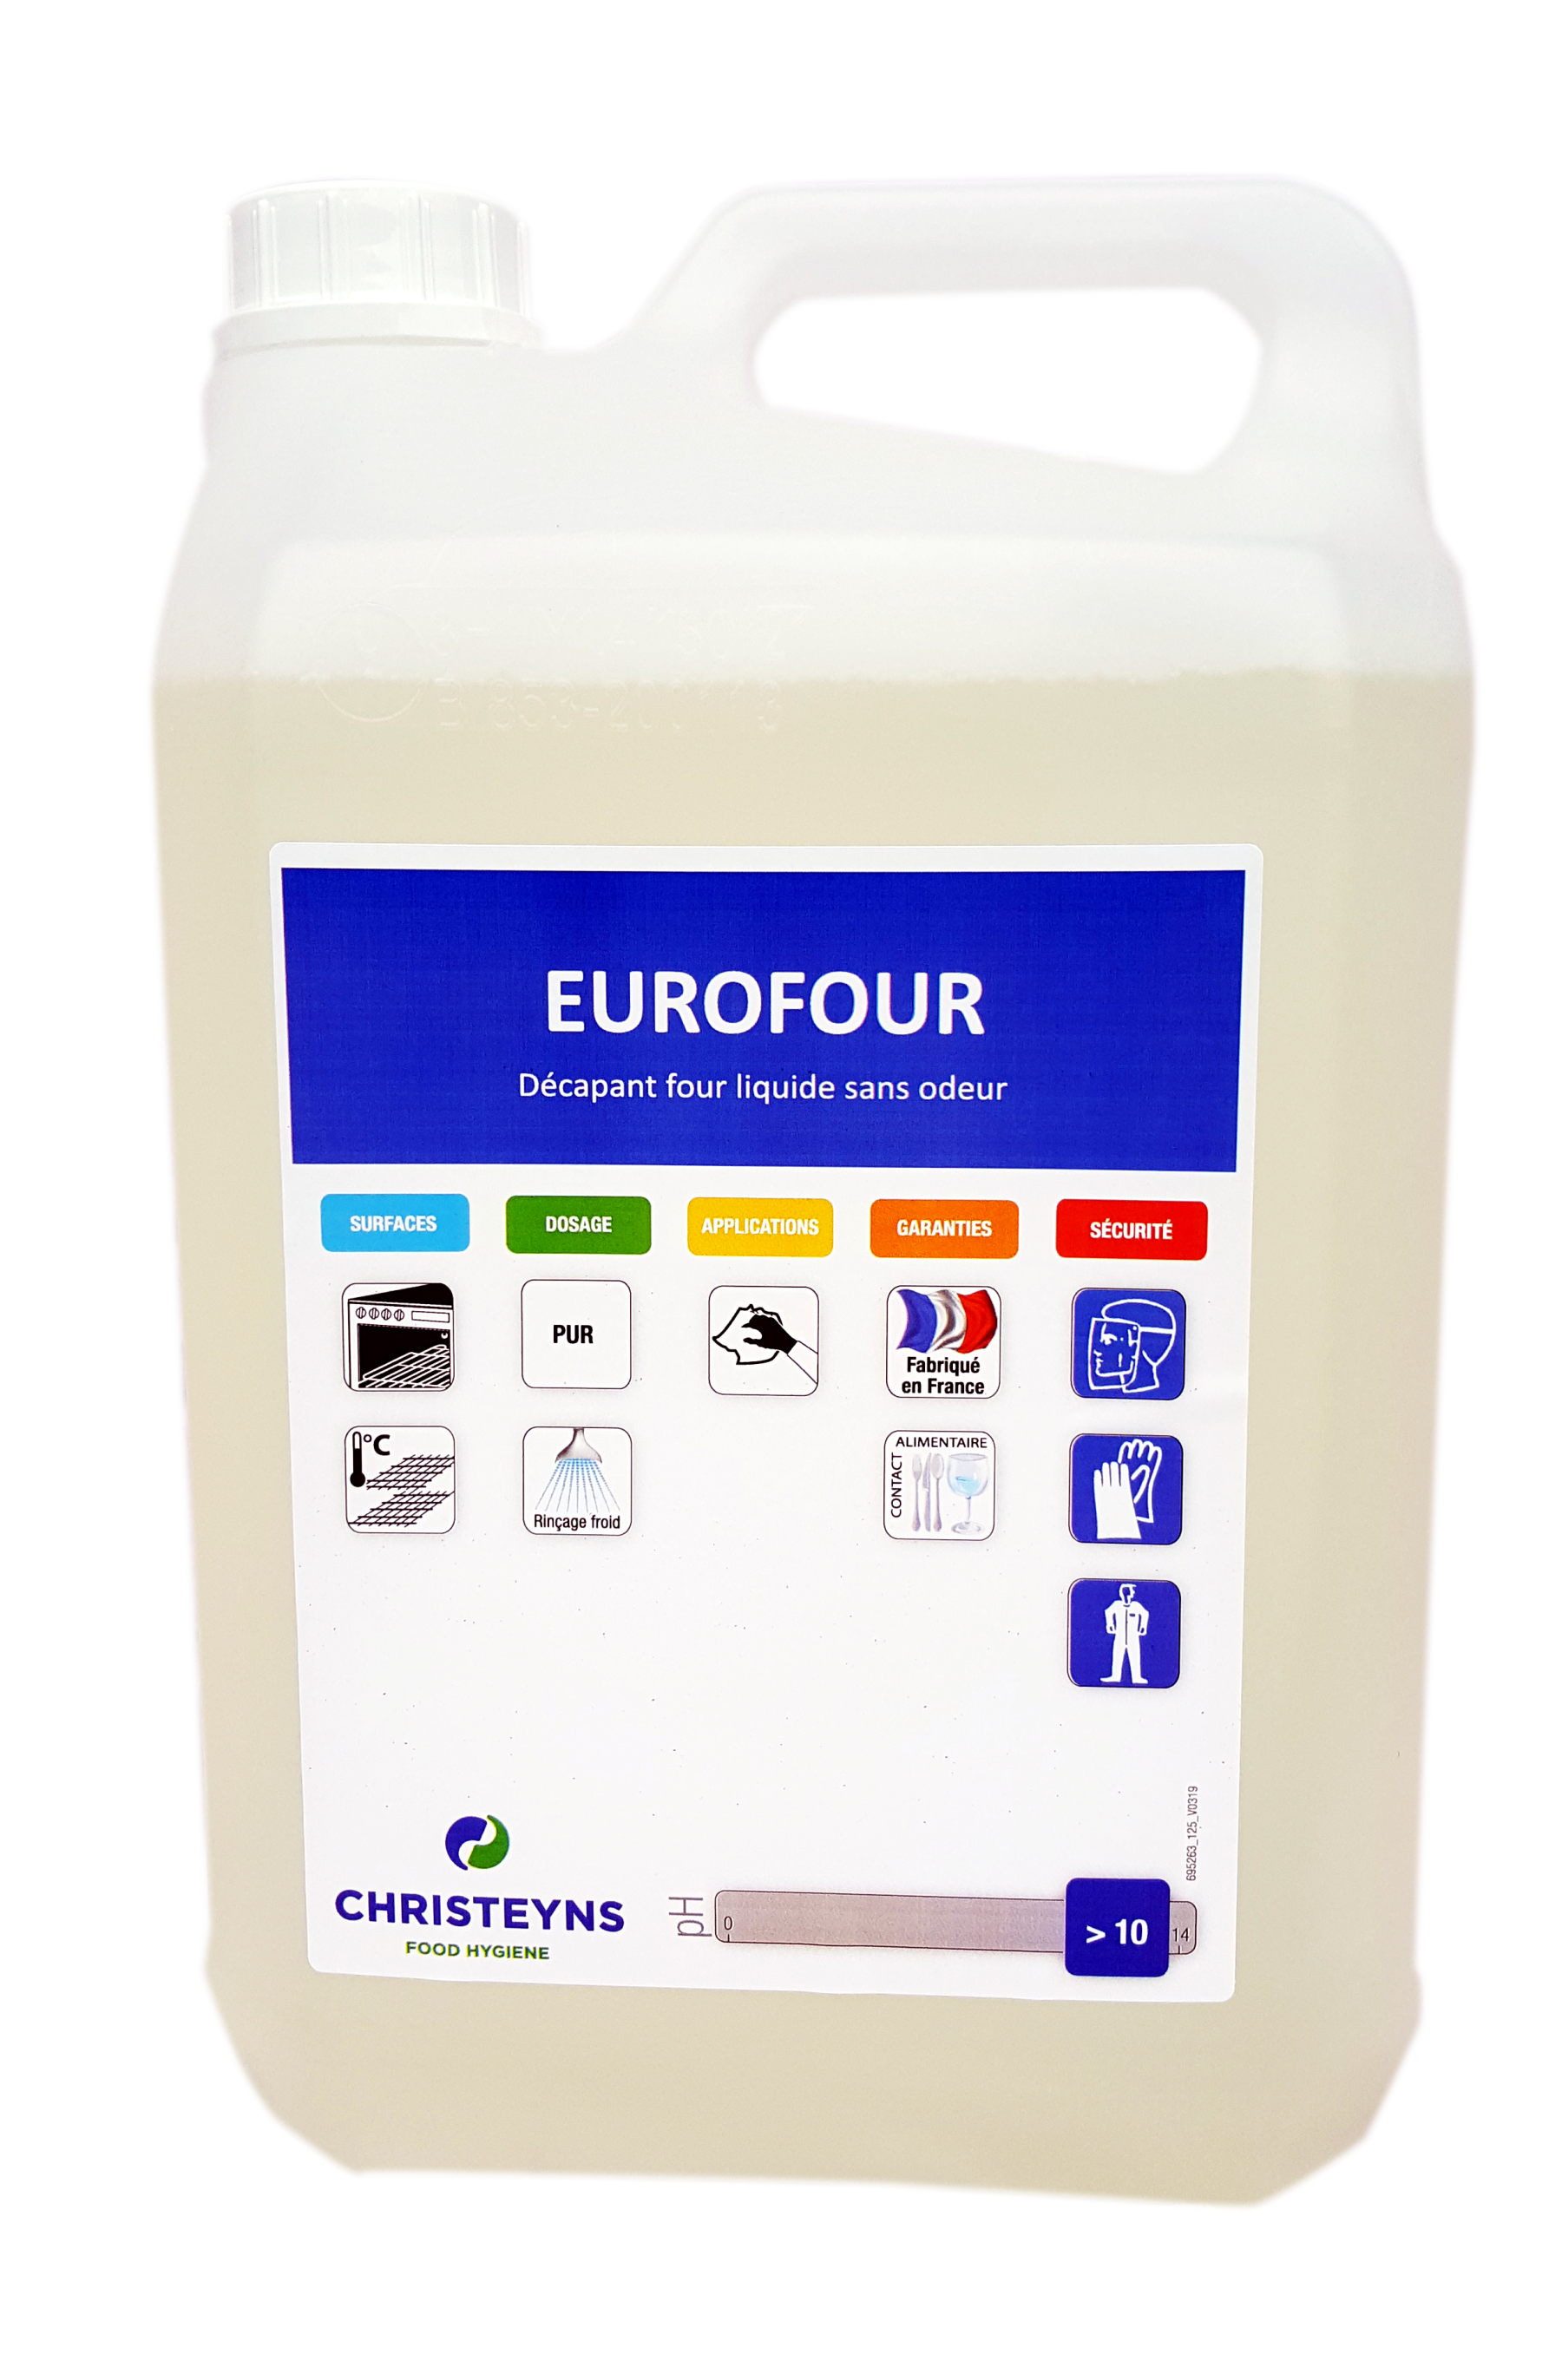 Eurofour décapant four sans odeur